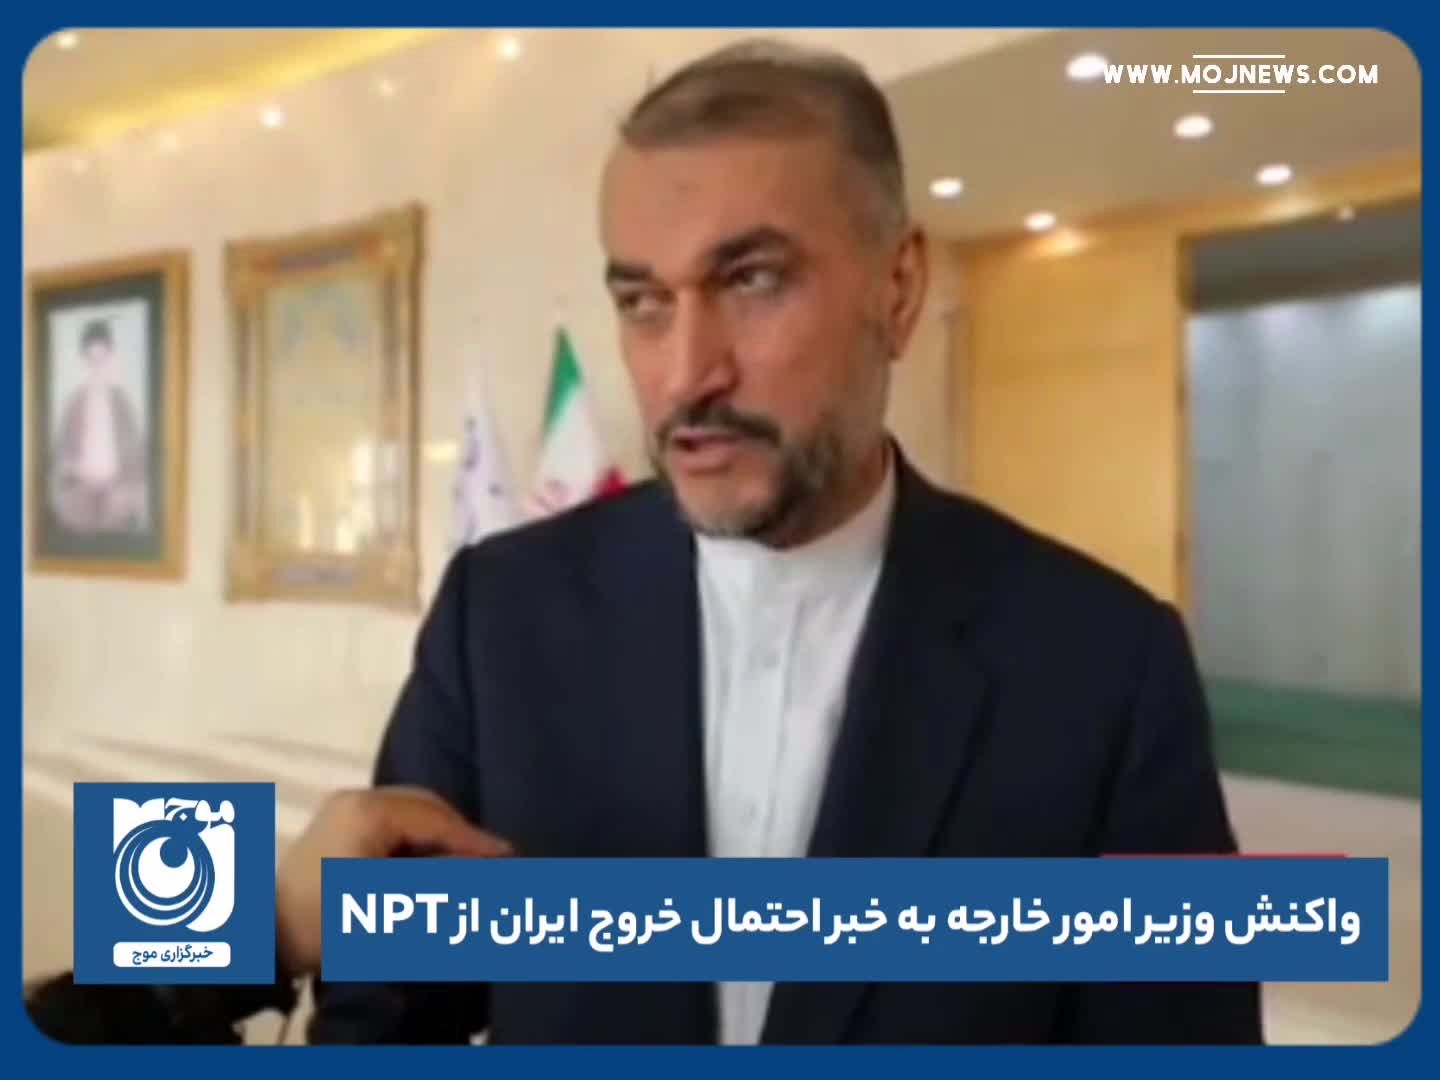 واکنش وزیر امور خارجه به احتمال خارج شدن ایران از NPT